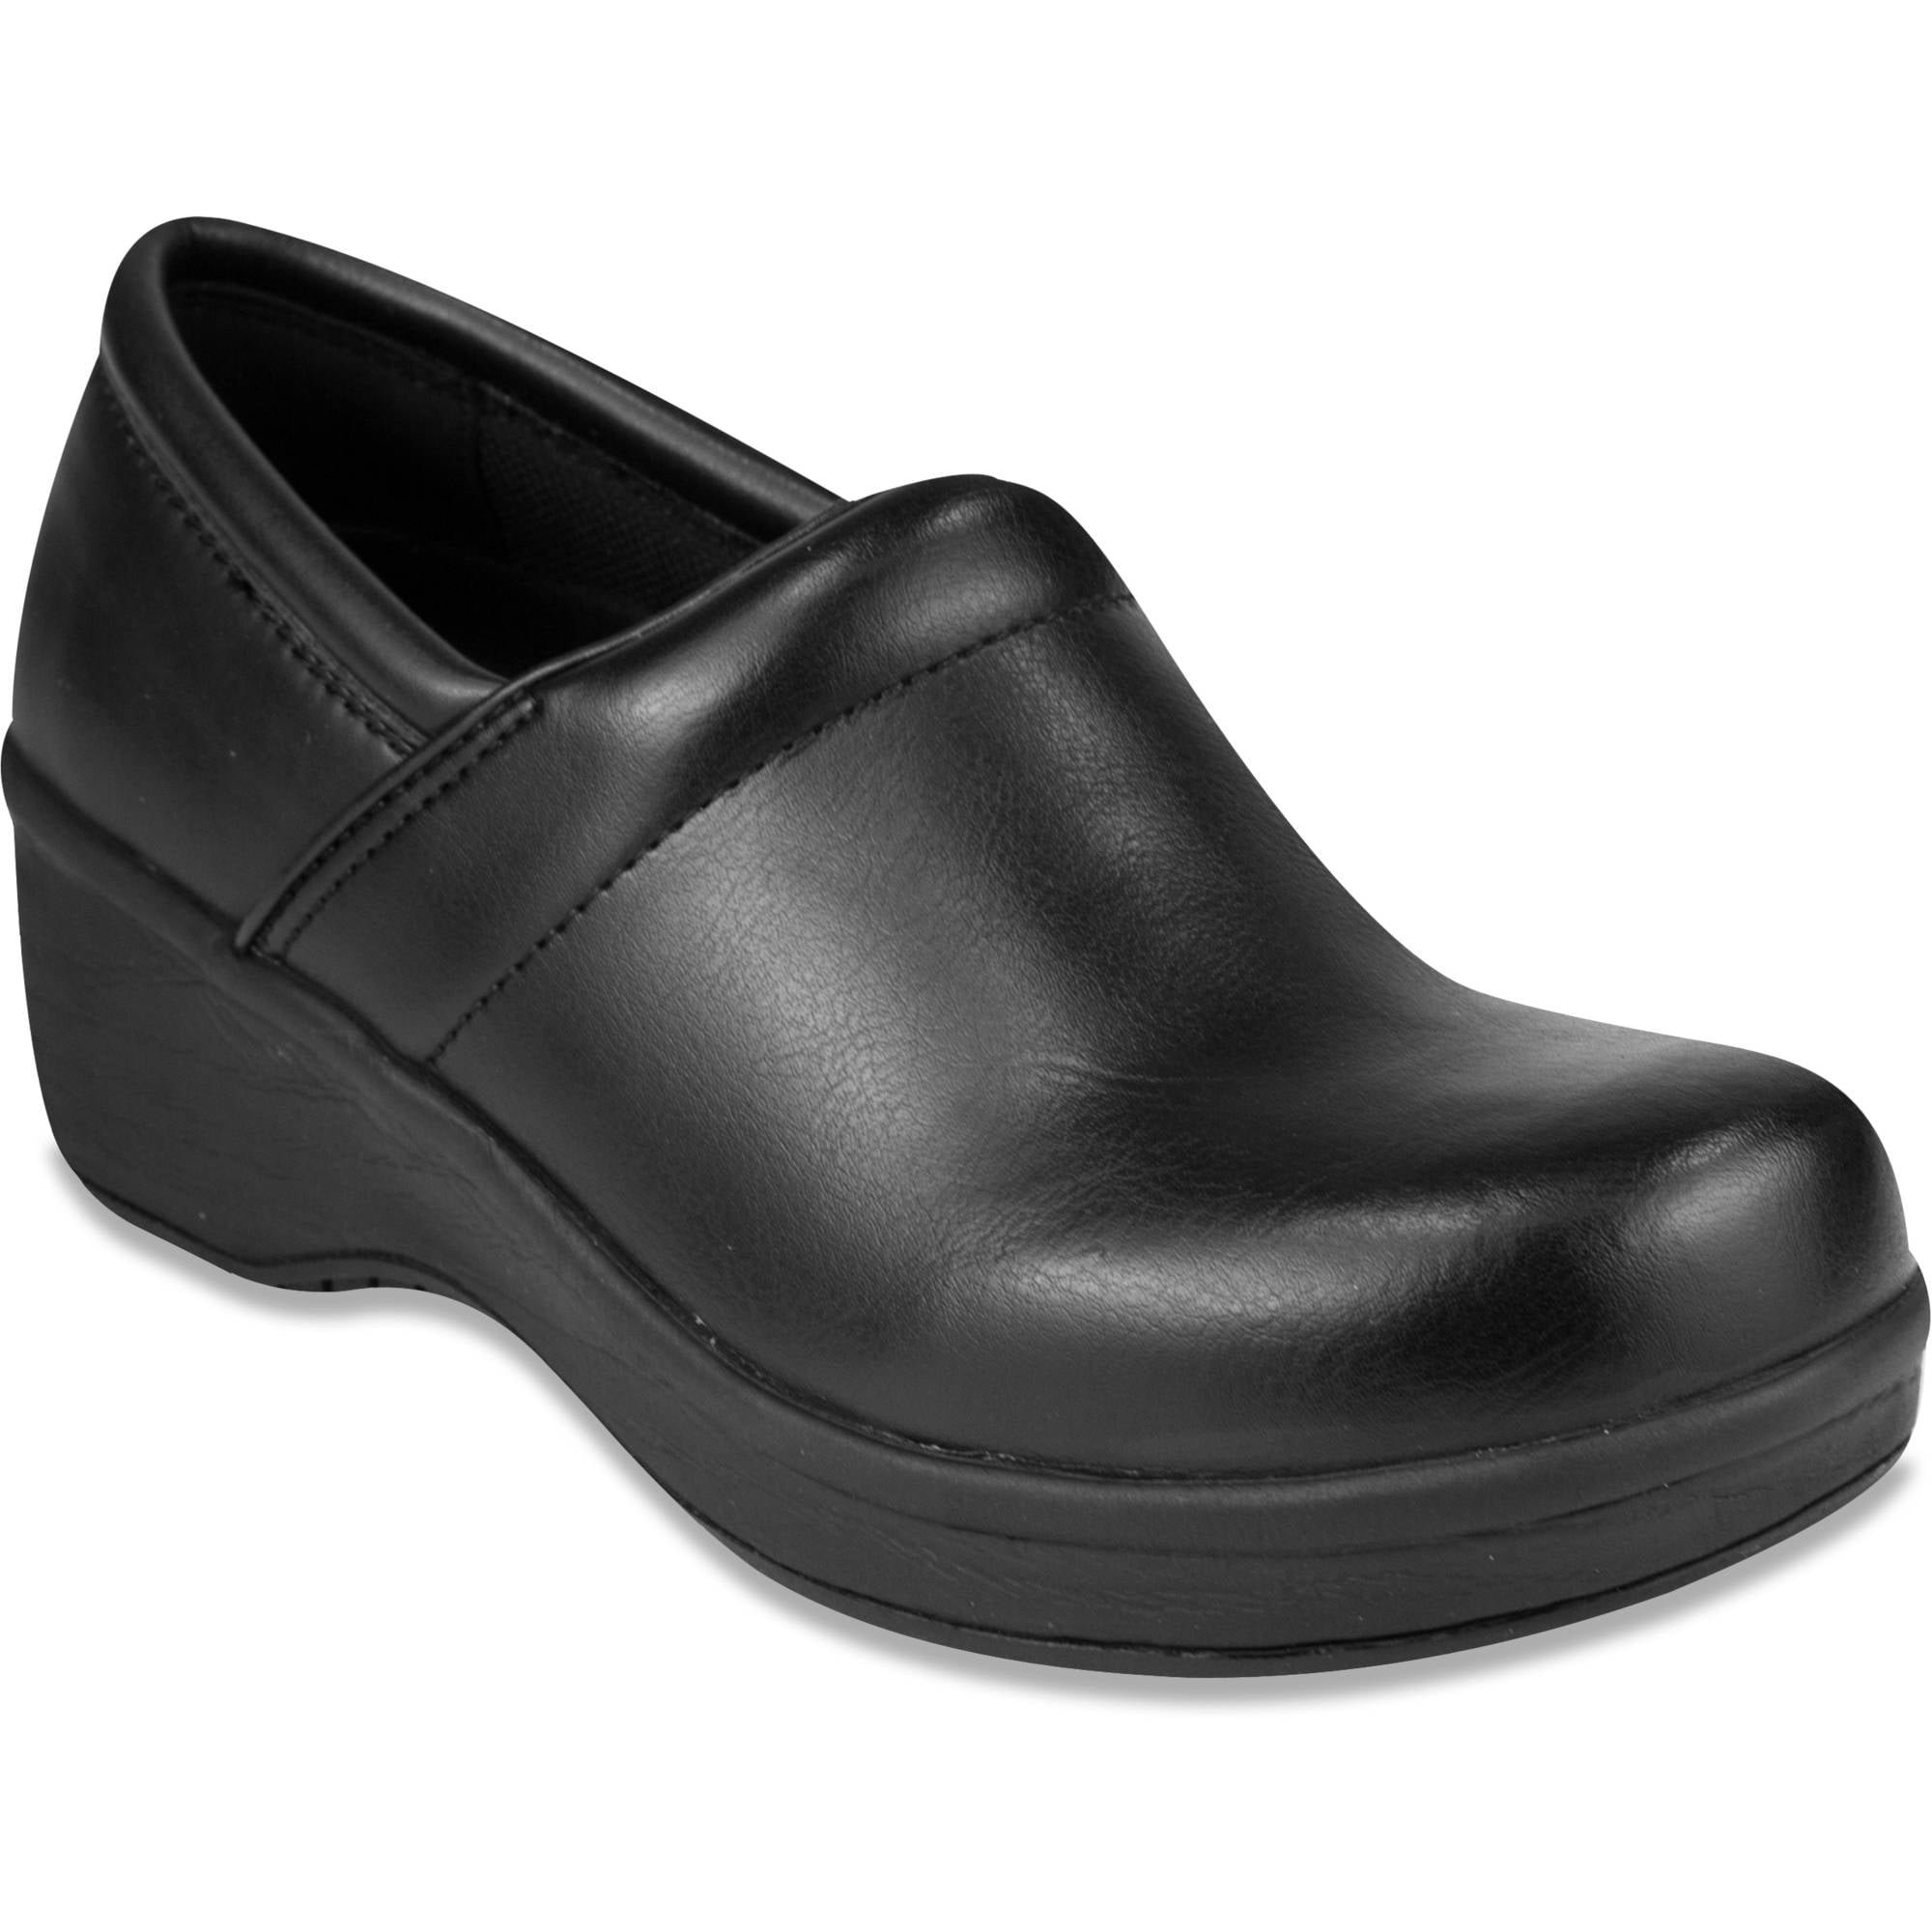 Tredsafe Tredsafe Women's Zest II SlipResistant Shoe